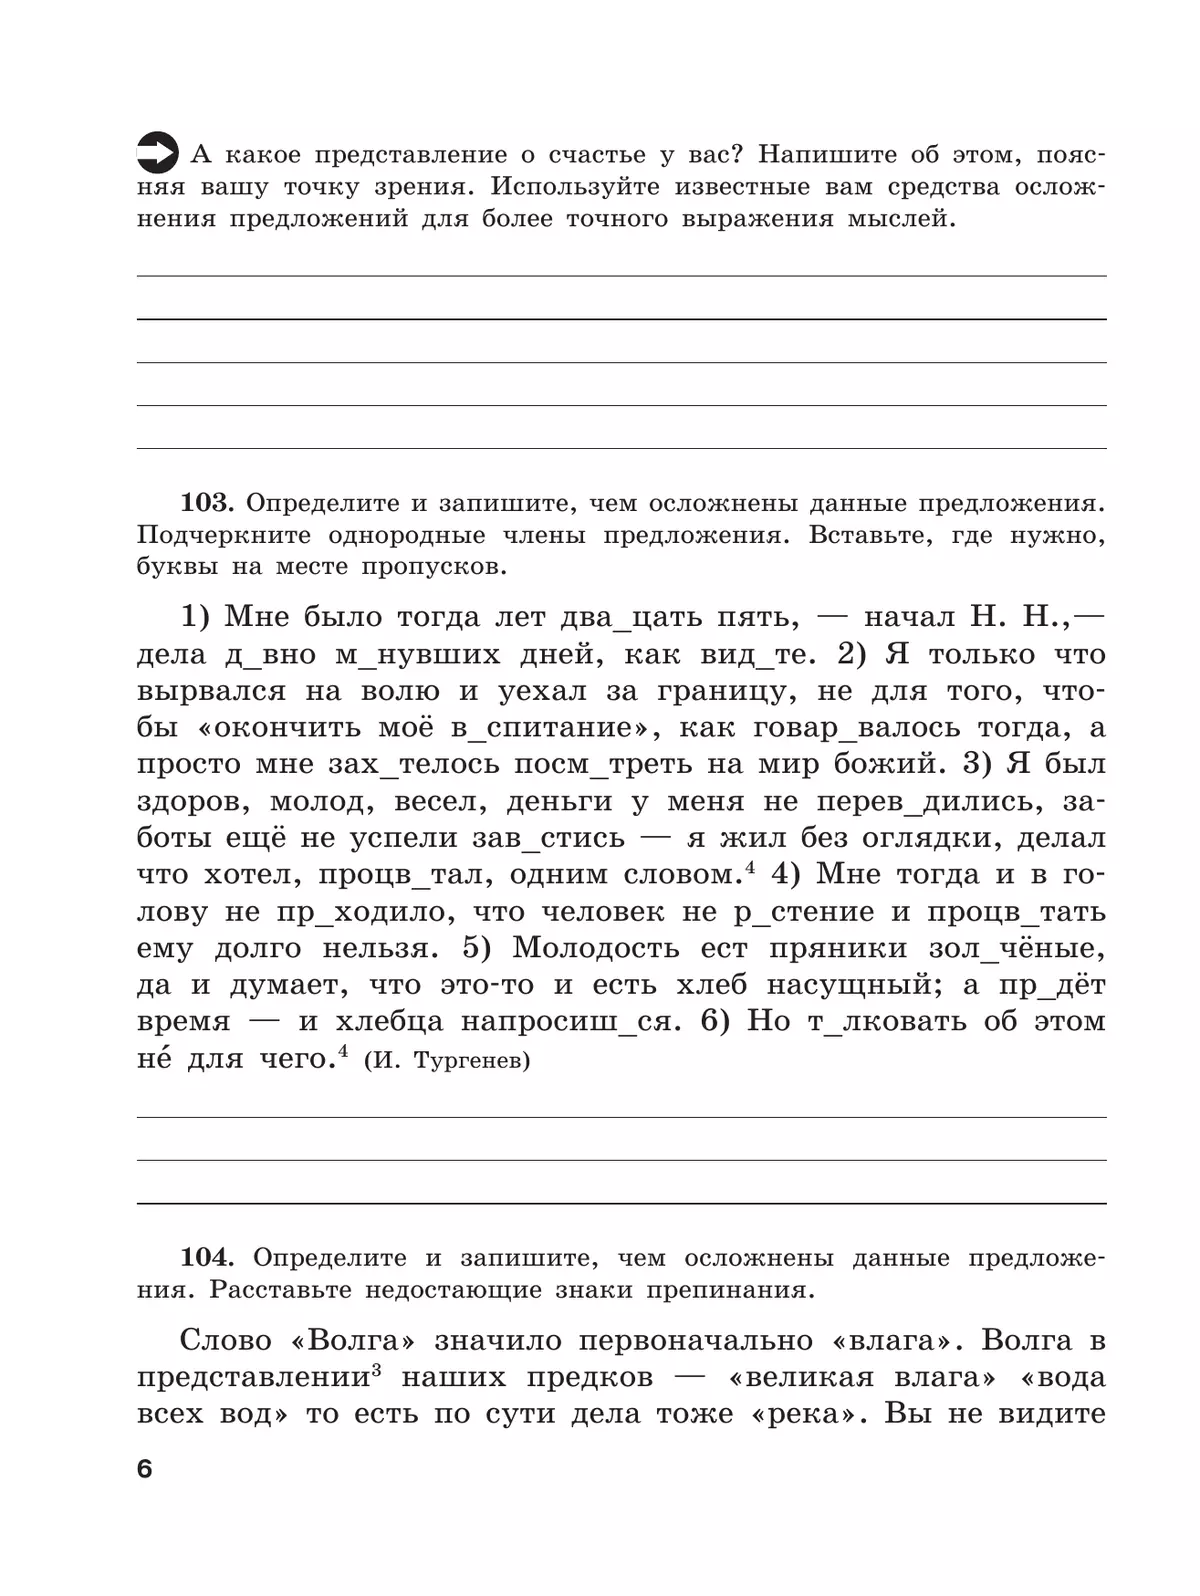 Скорая помощь по русскому языку. Рабочая тетрадь. 8 класс. В 2 ч. Часть 2 3